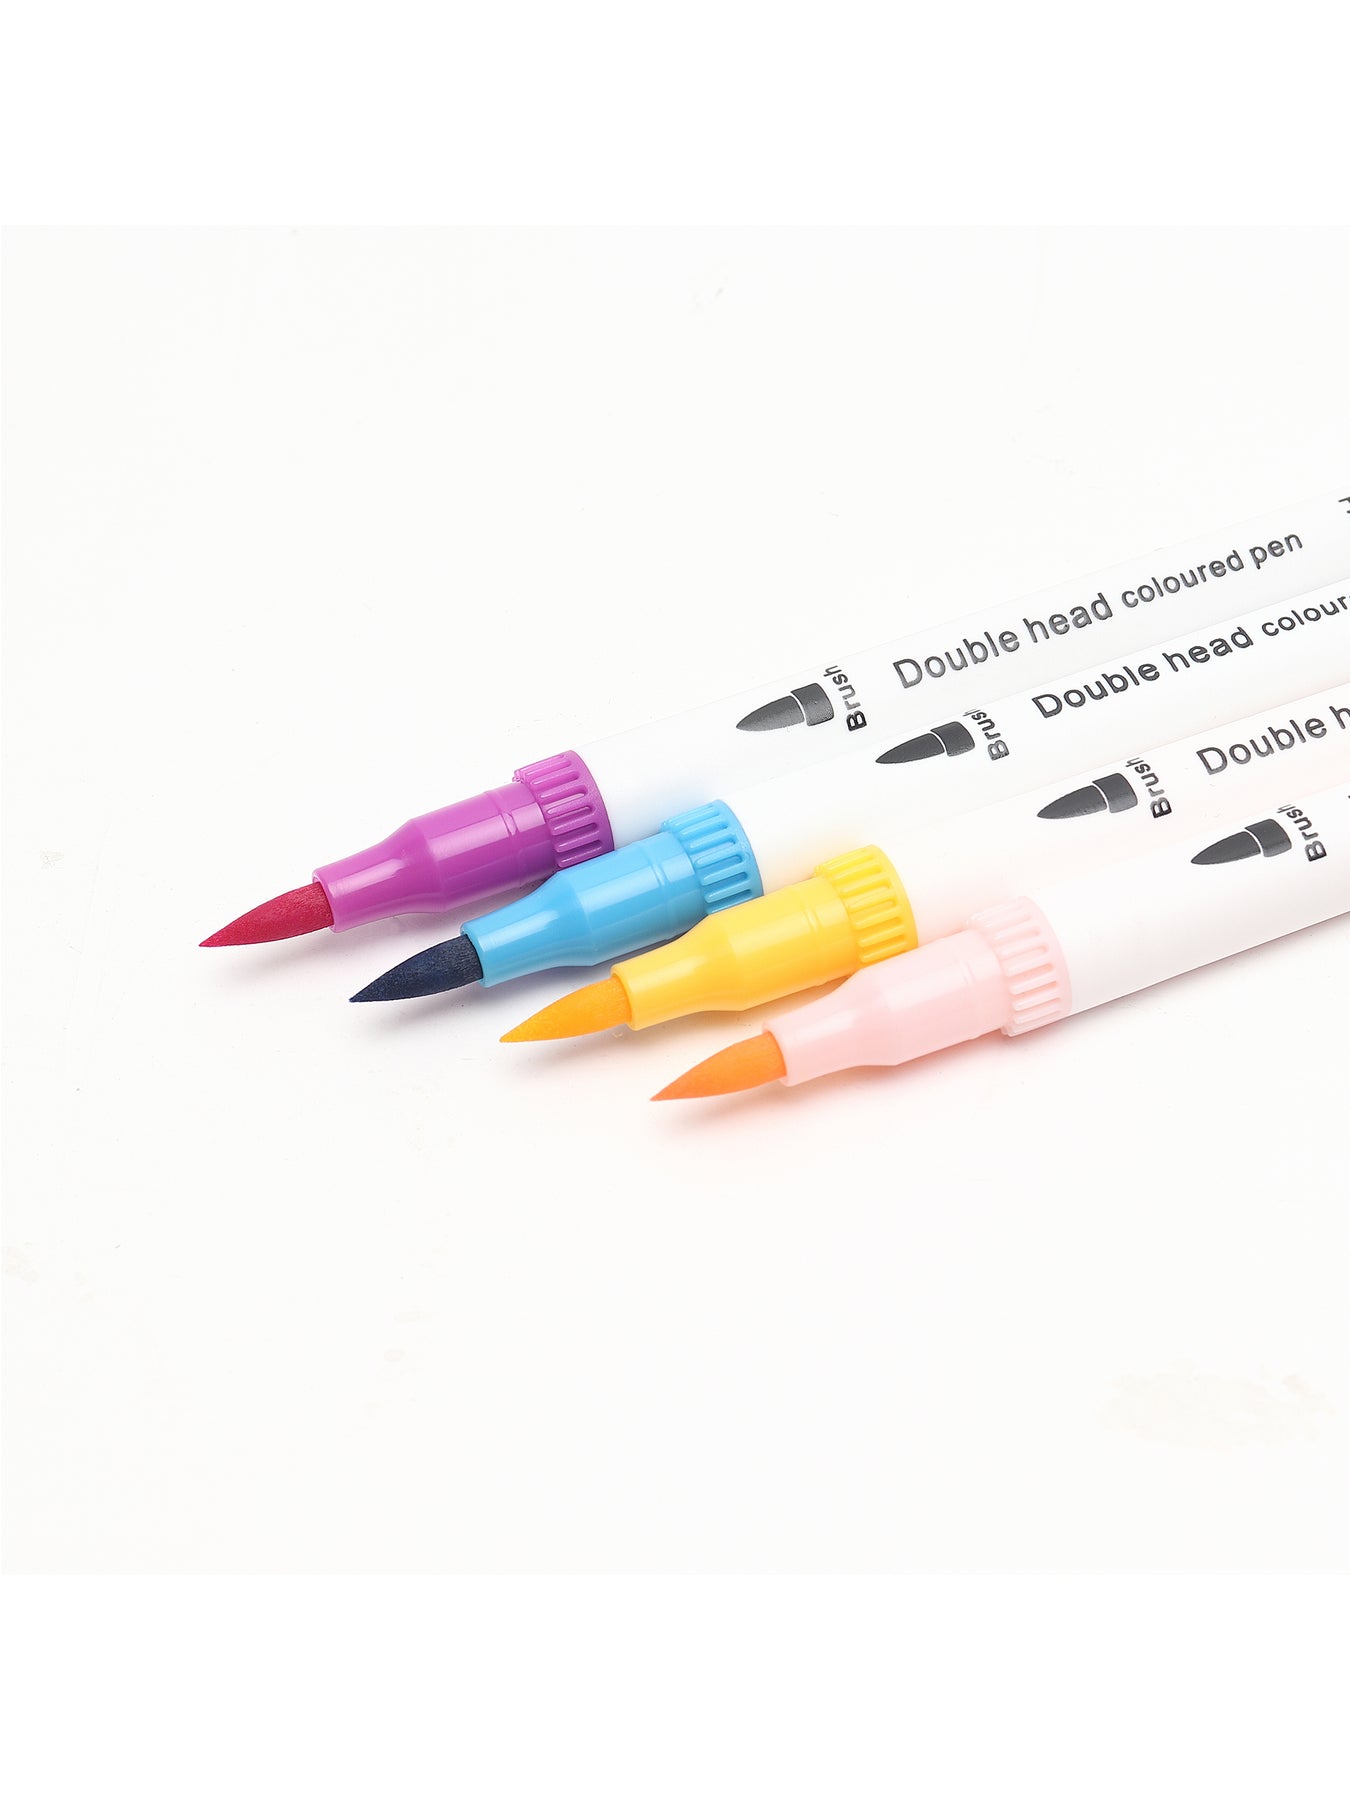 AenArt Dual Brush Marker Pen 36 Color Set Fine Point Art Brush Water Based